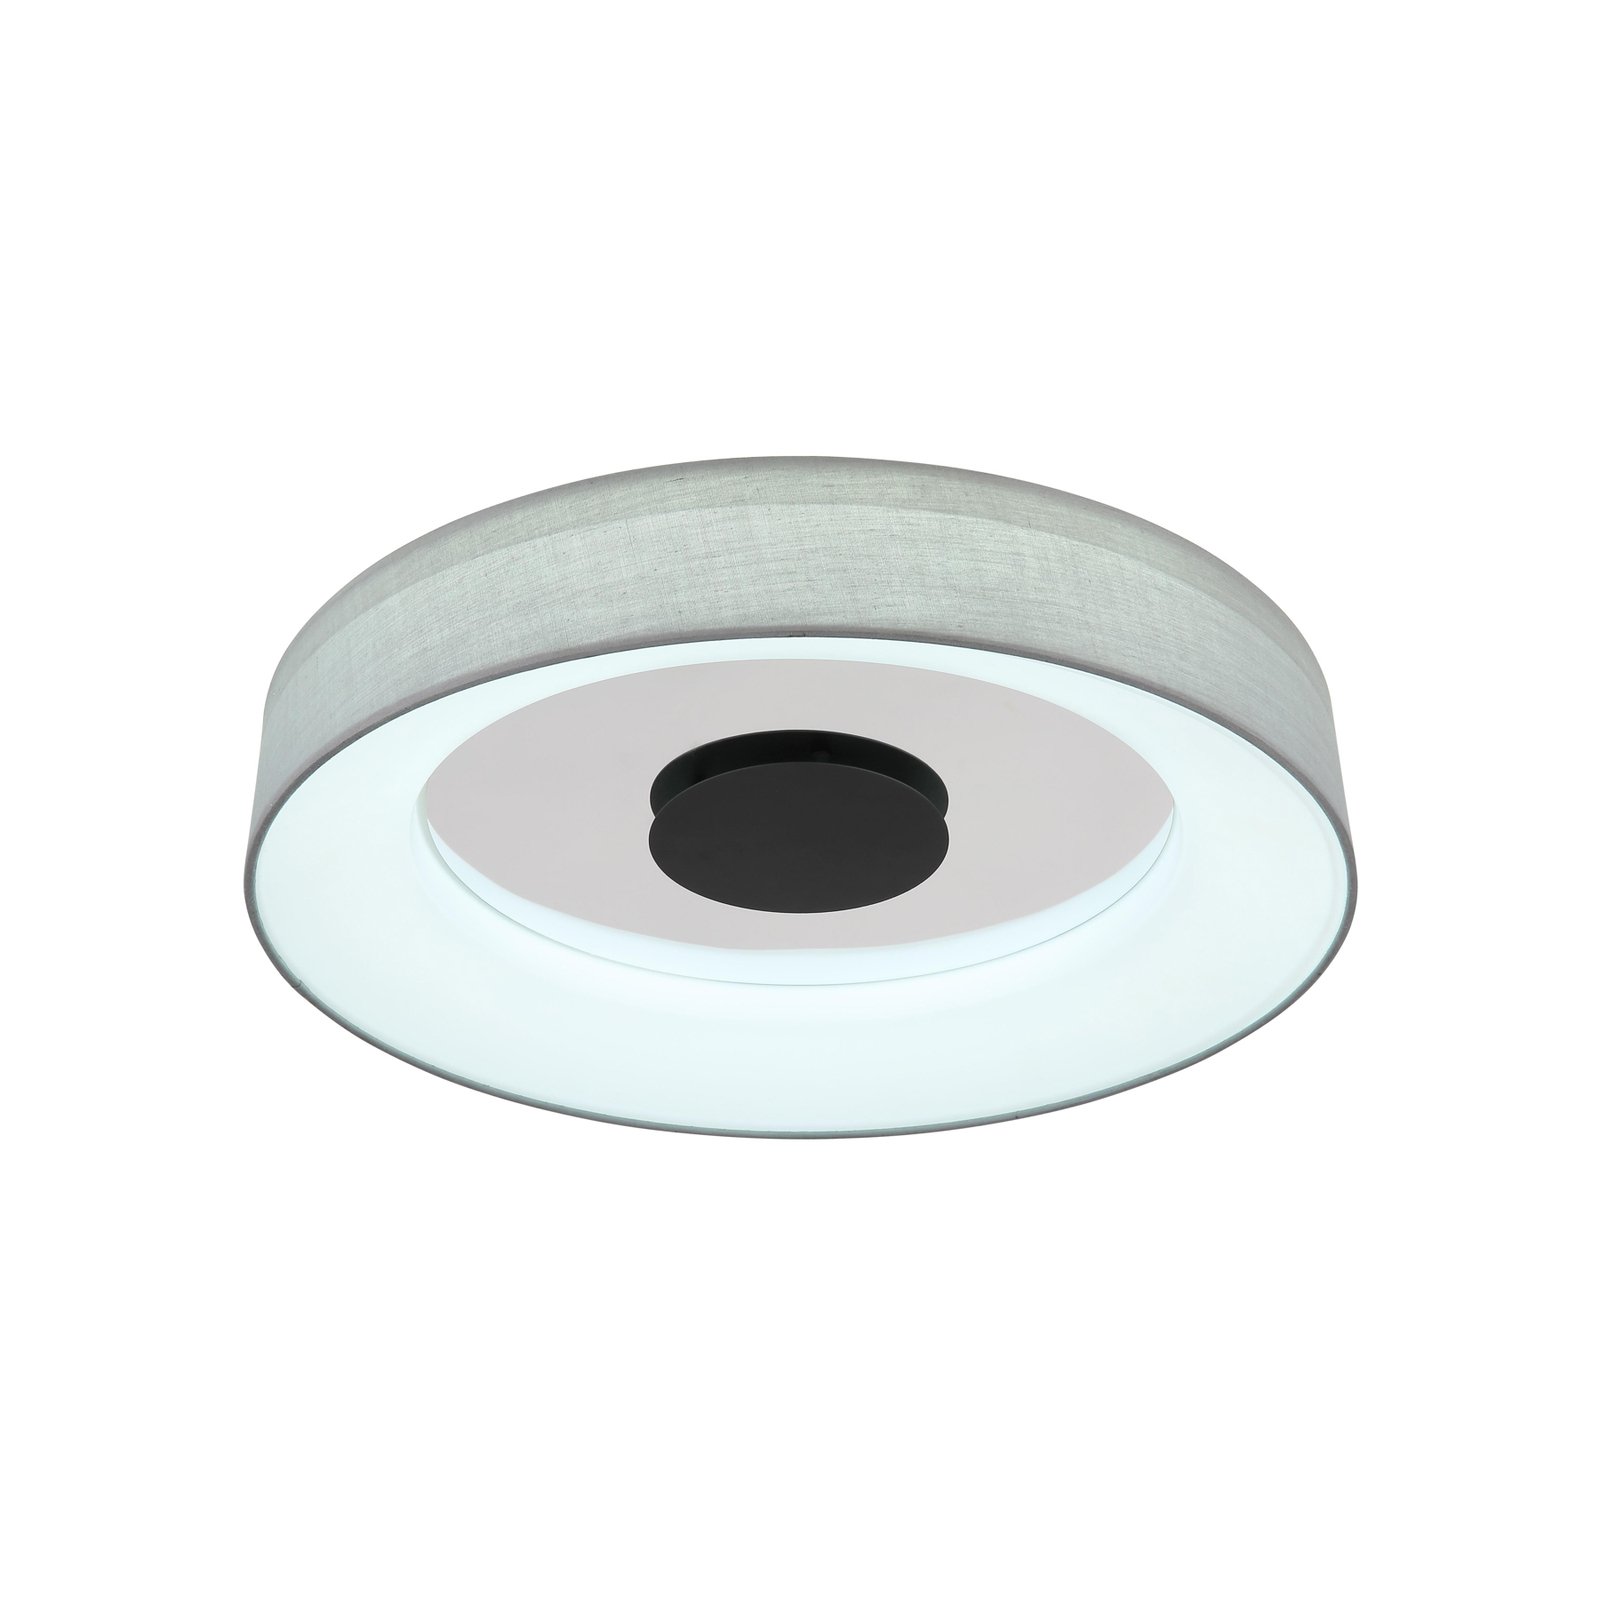 Älykäs LED-kattovalaisin Terpsa, valkoinen/harmaa, Ø 46,8 cm, kangasta